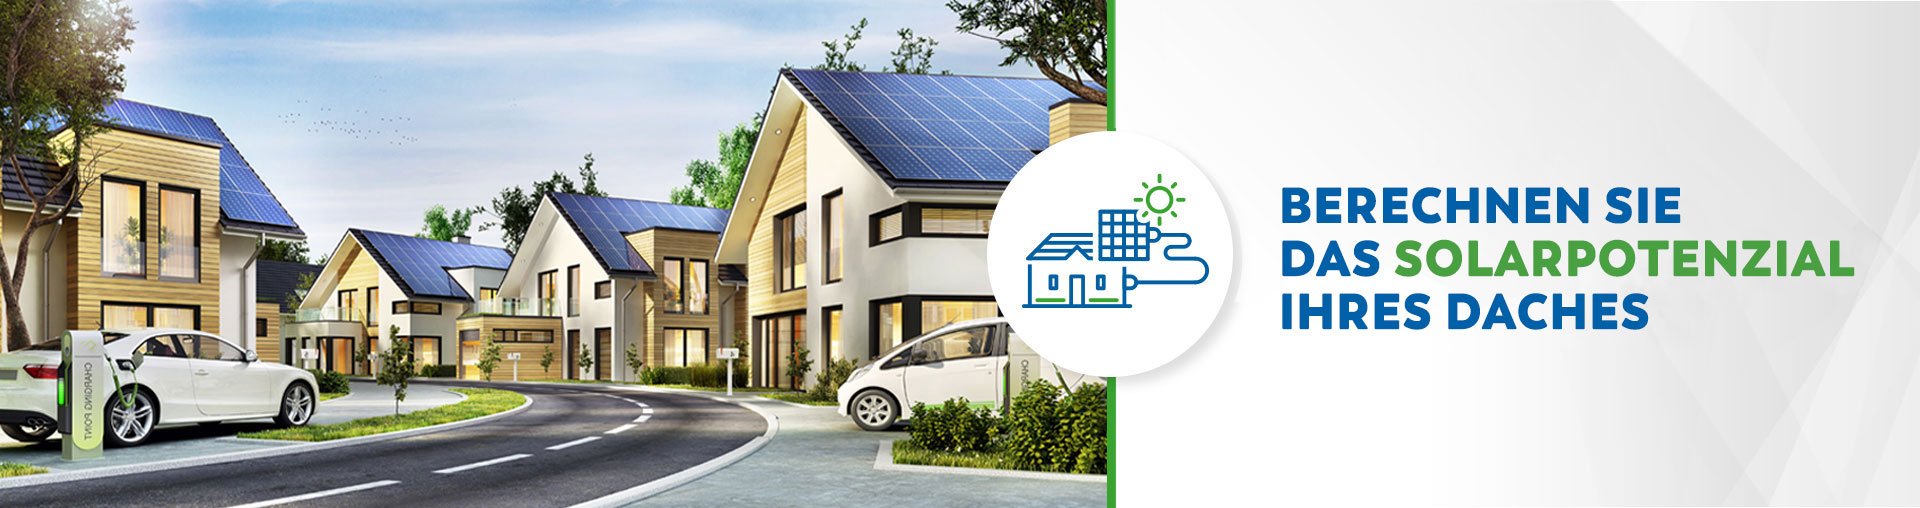 SB energetica calcolo potenziale solare del tetto Energie rinnovabili risparmio economico impianti fotovoltaici solare termico sistemi di accumulo colonnine elettriche led